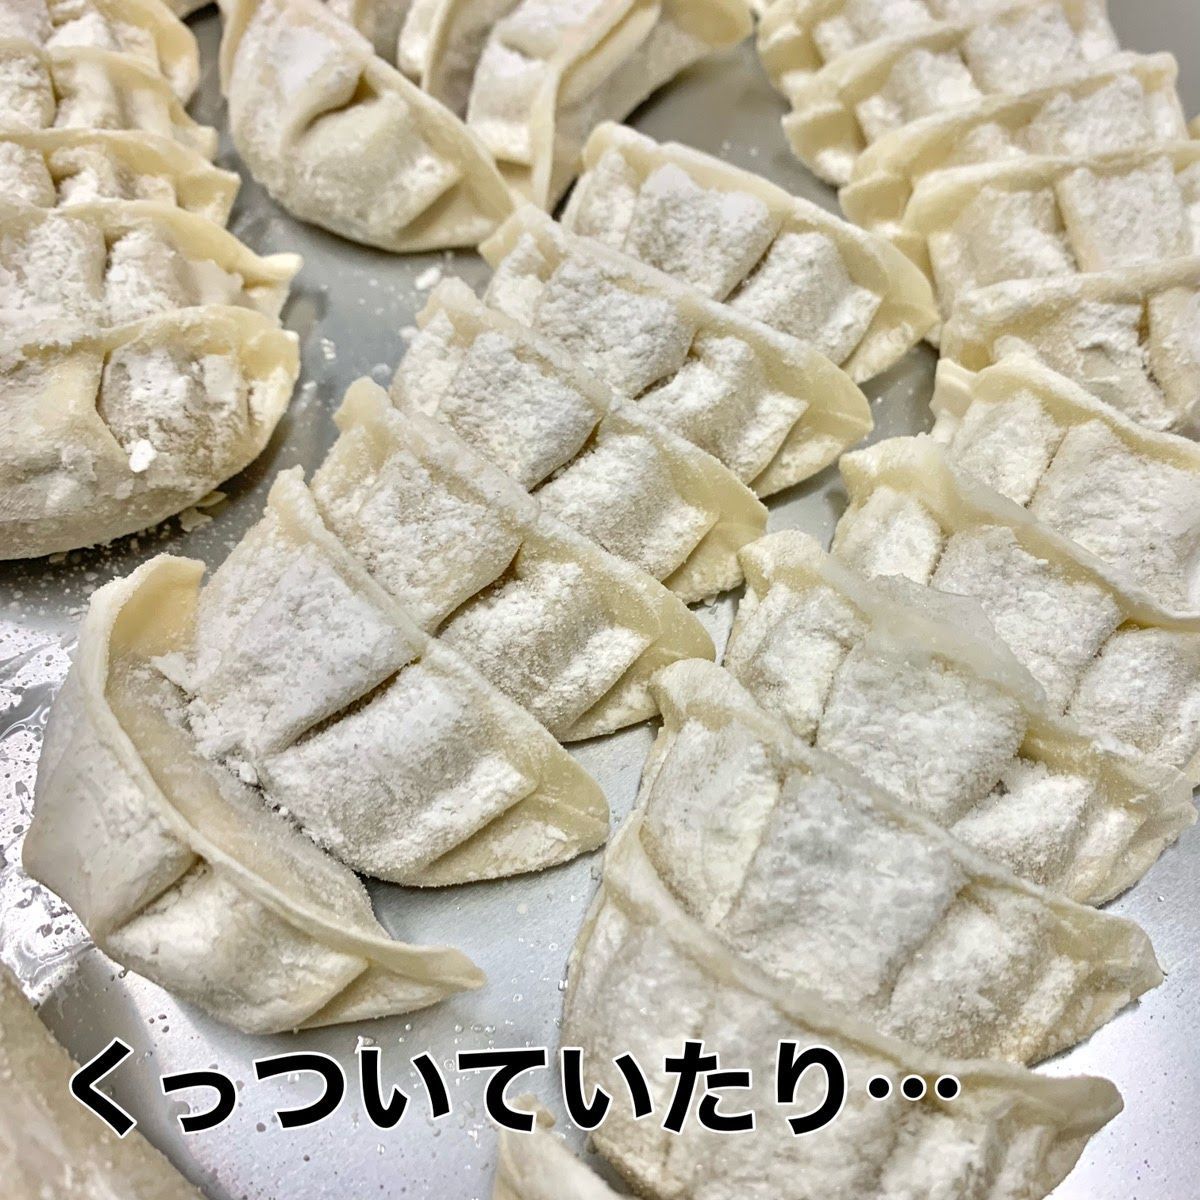 数量限定 訳あり 200個入 神戸餃子楼 工場直販 冷凍生餃子 生姜 鍋-1